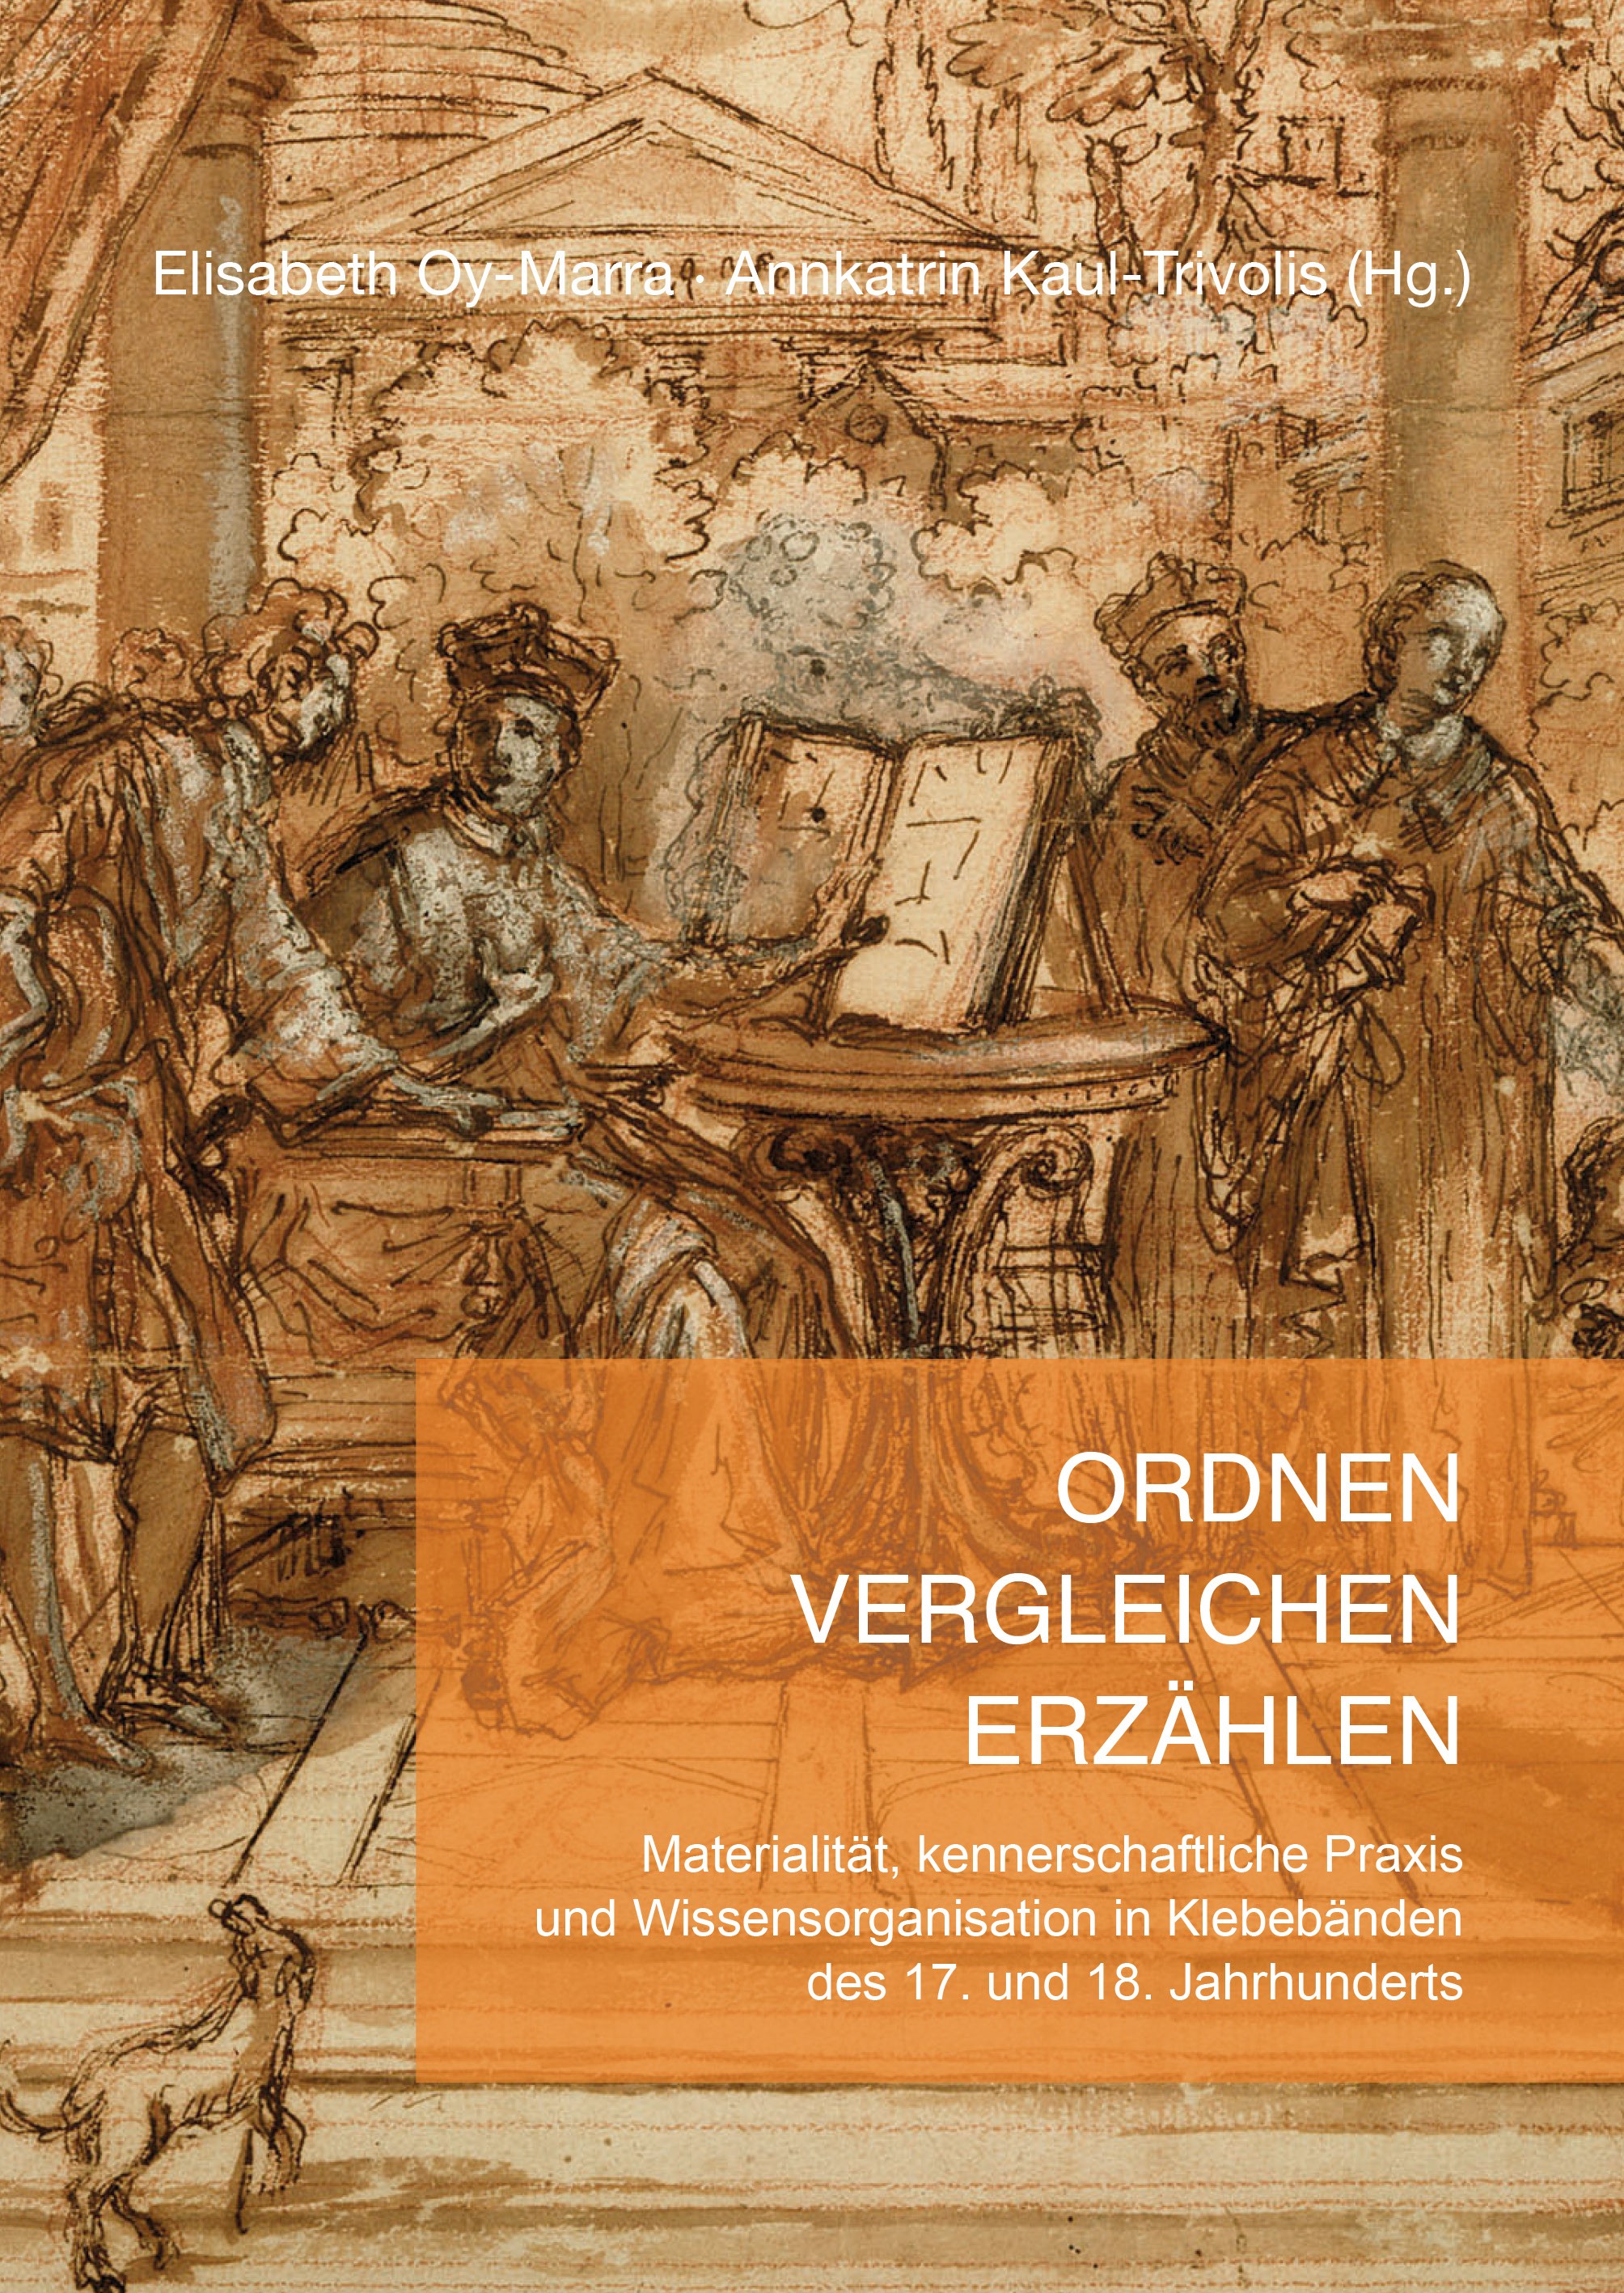 More information about 'Ordnen – Vergleichen – Erzählen'